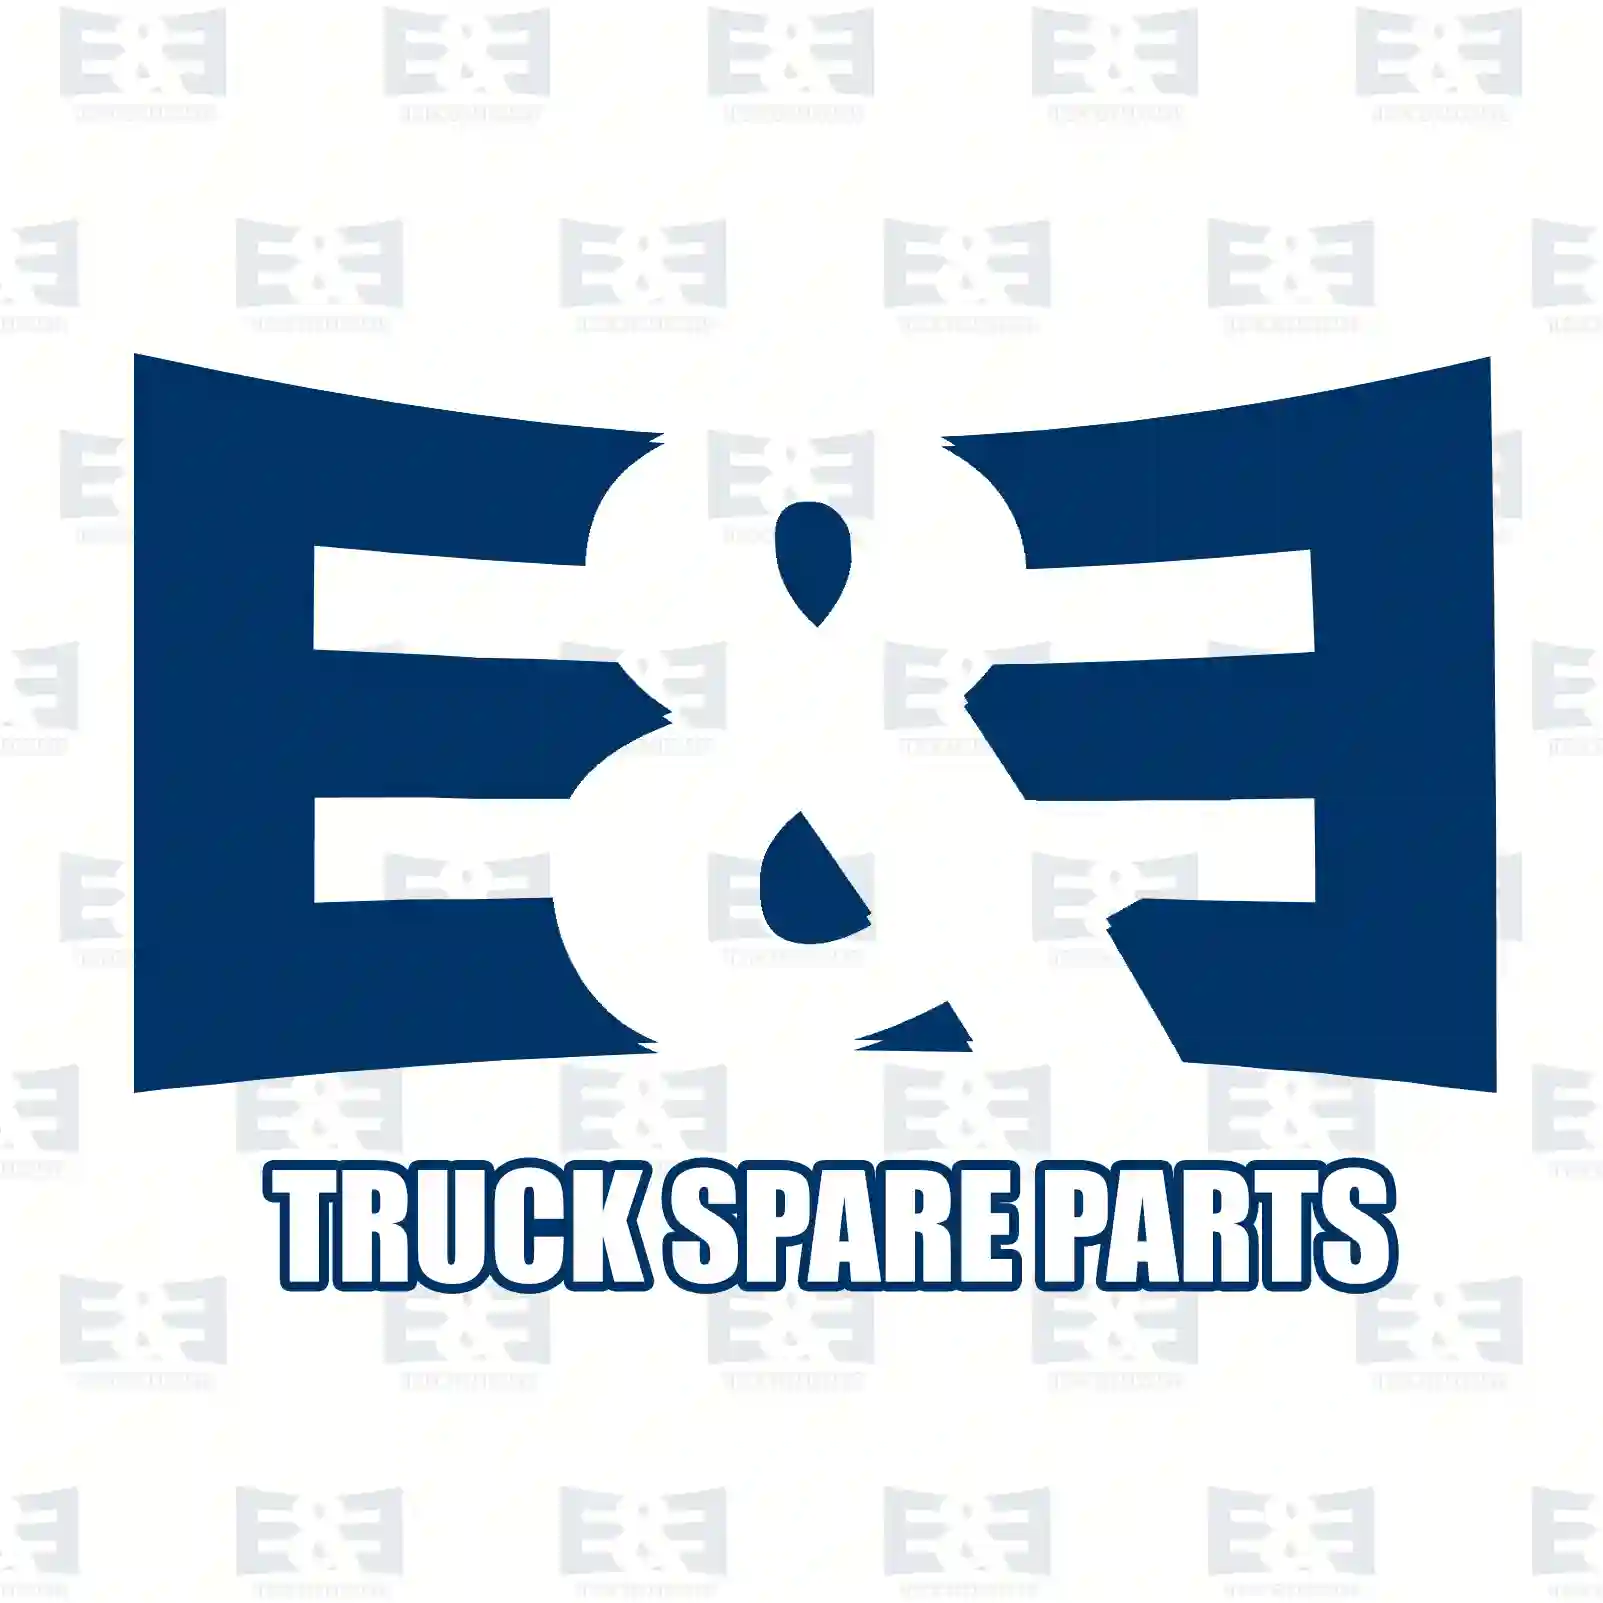 Gear, 3rd gear, 2E2276006, 1322291 ||  2E2276006 E&E Truck Spare Parts | Truck Spare Parts, Auotomotive Spare Parts Gear, 3rd gear, 2E2276006, 1322291 ||  2E2276006 E&E Truck Spare Parts | Truck Spare Parts, Auotomotive Spare Parts